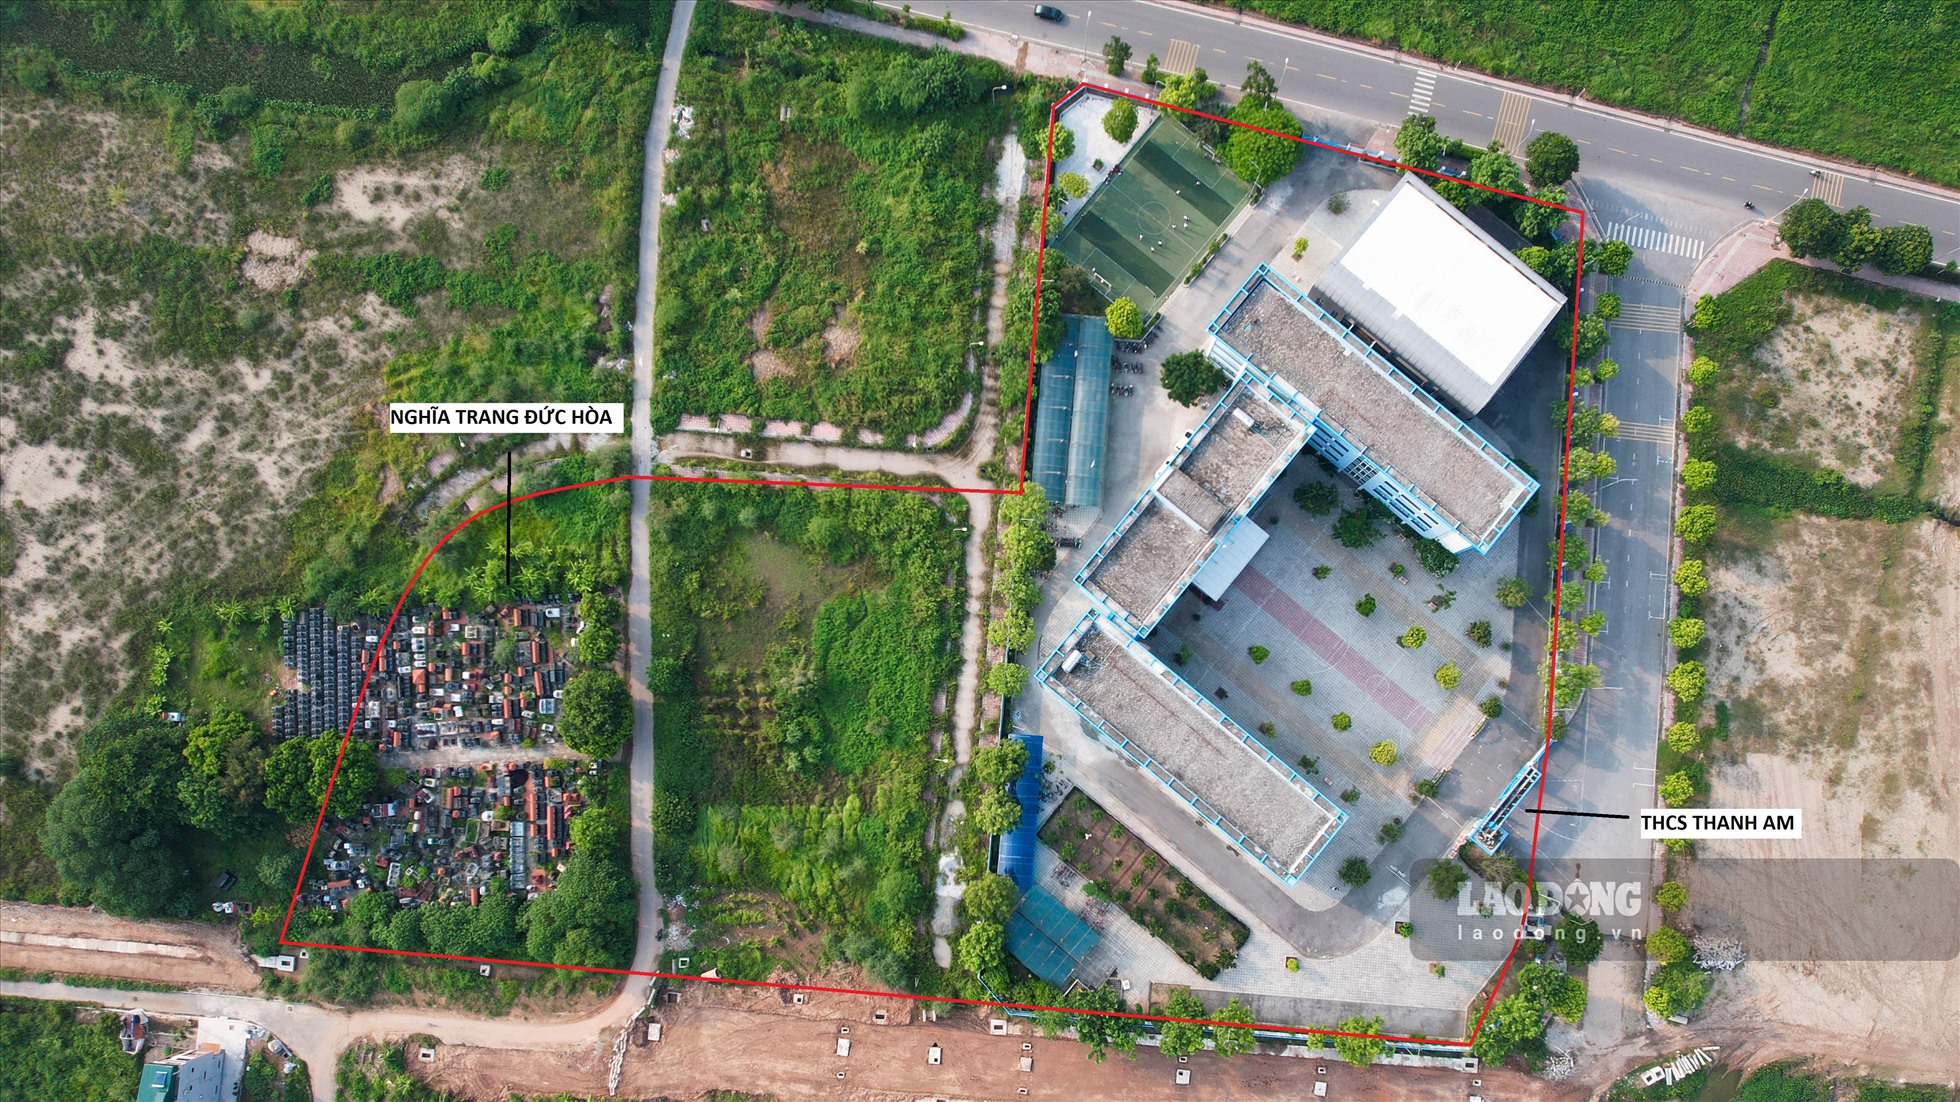 Tương tự, theo quy hoạch phân khu N10, khu vực nghĩa trang Đức Hòa (phường Thượng Thanh, Long Biên), gần trường THCS Thanh Am hiện hữu cũng được quy hoạch xây trường học.